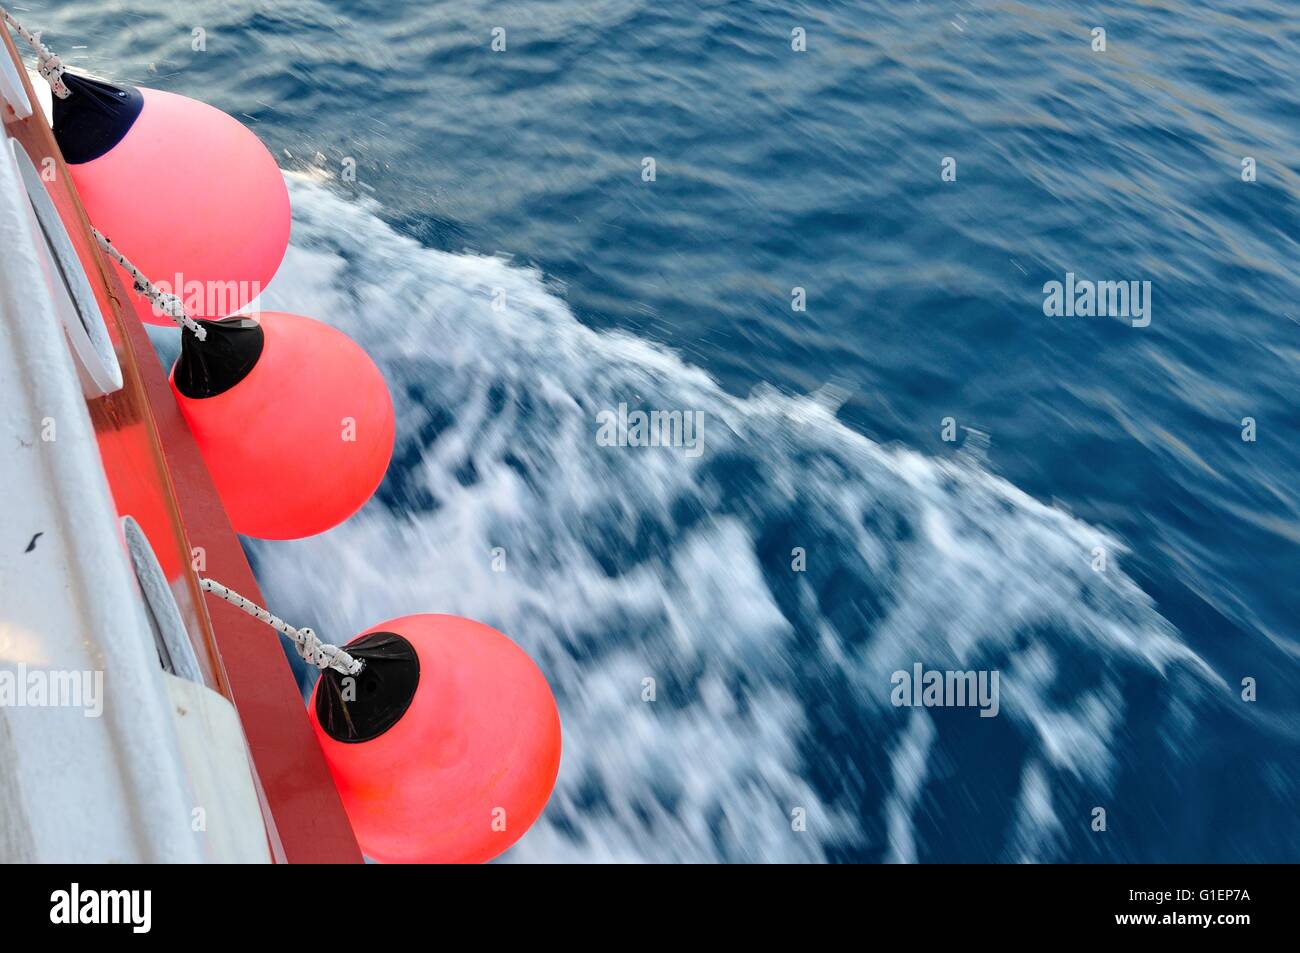 Boa di colore rosso sul corpo della nave in movimento. Sventolando mare adriatico nella parte destra dell'immagine. L'immagine orizzontale. Foto Stock